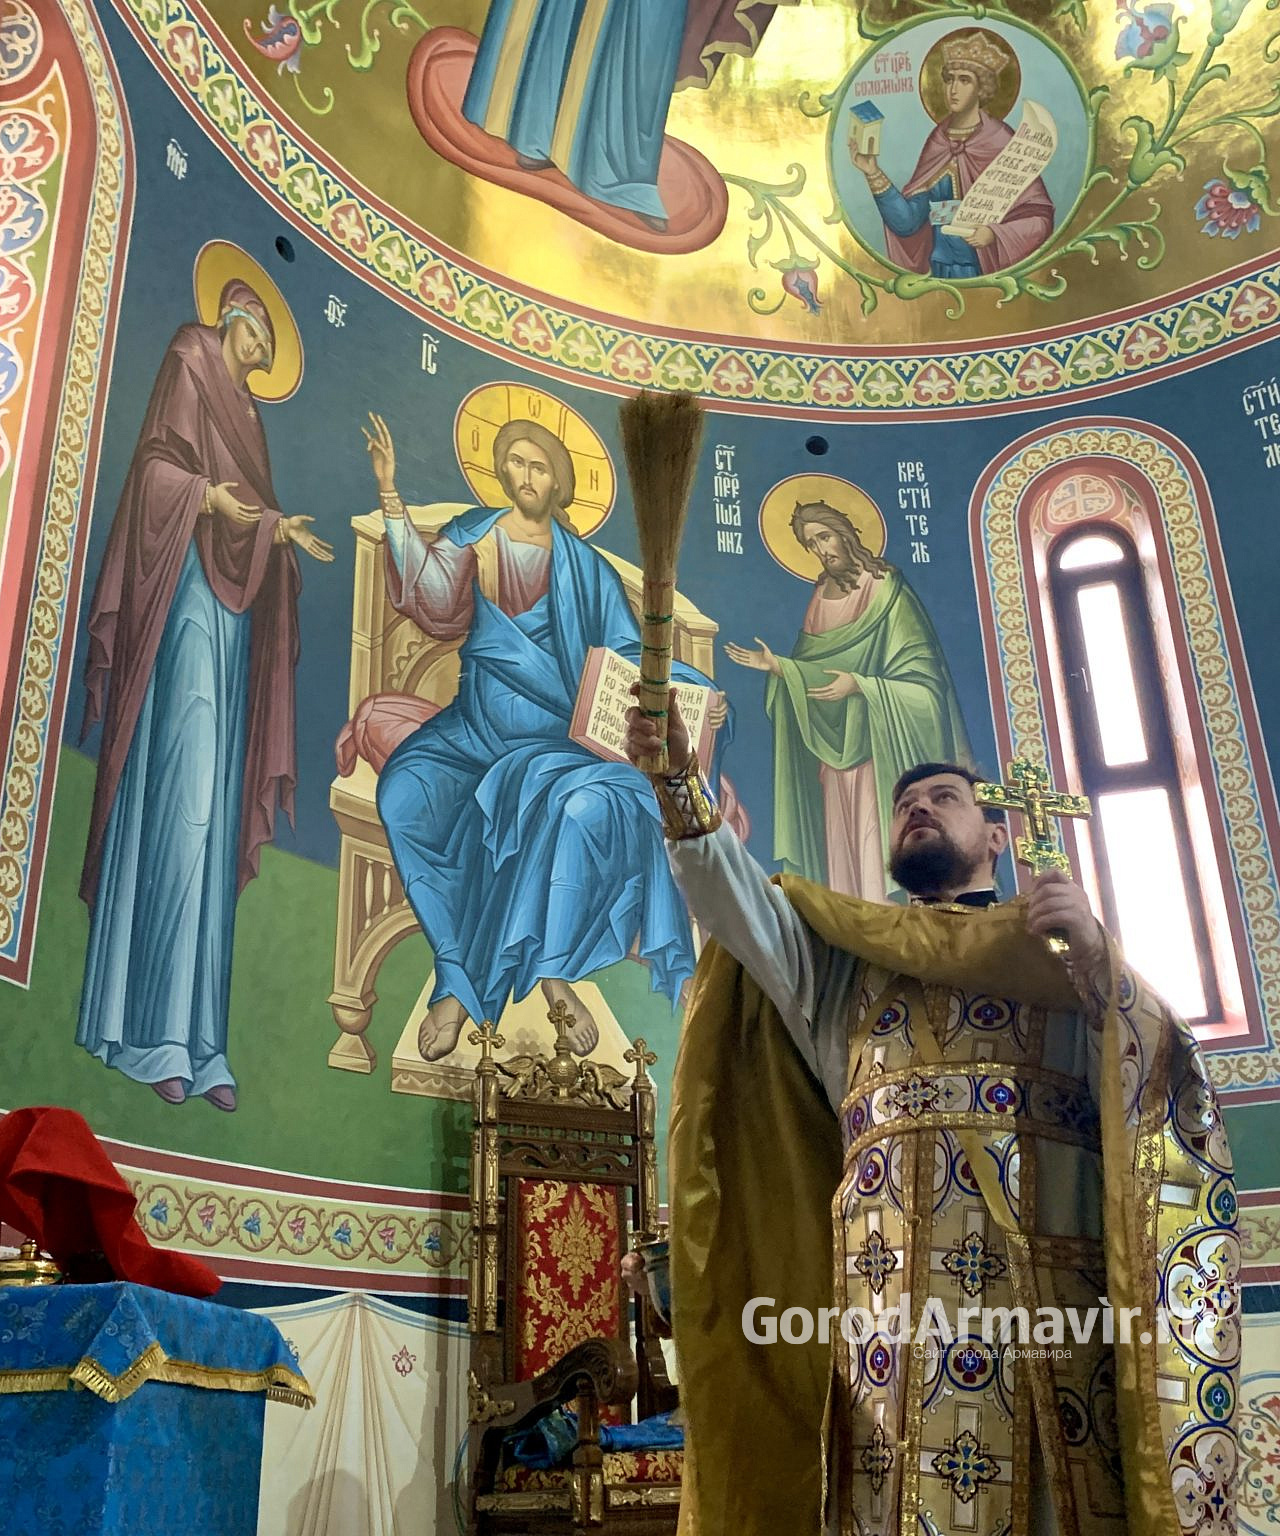 В Армавире Иоанн Гелеван освятил росписи в алтаре Христорождественского храма